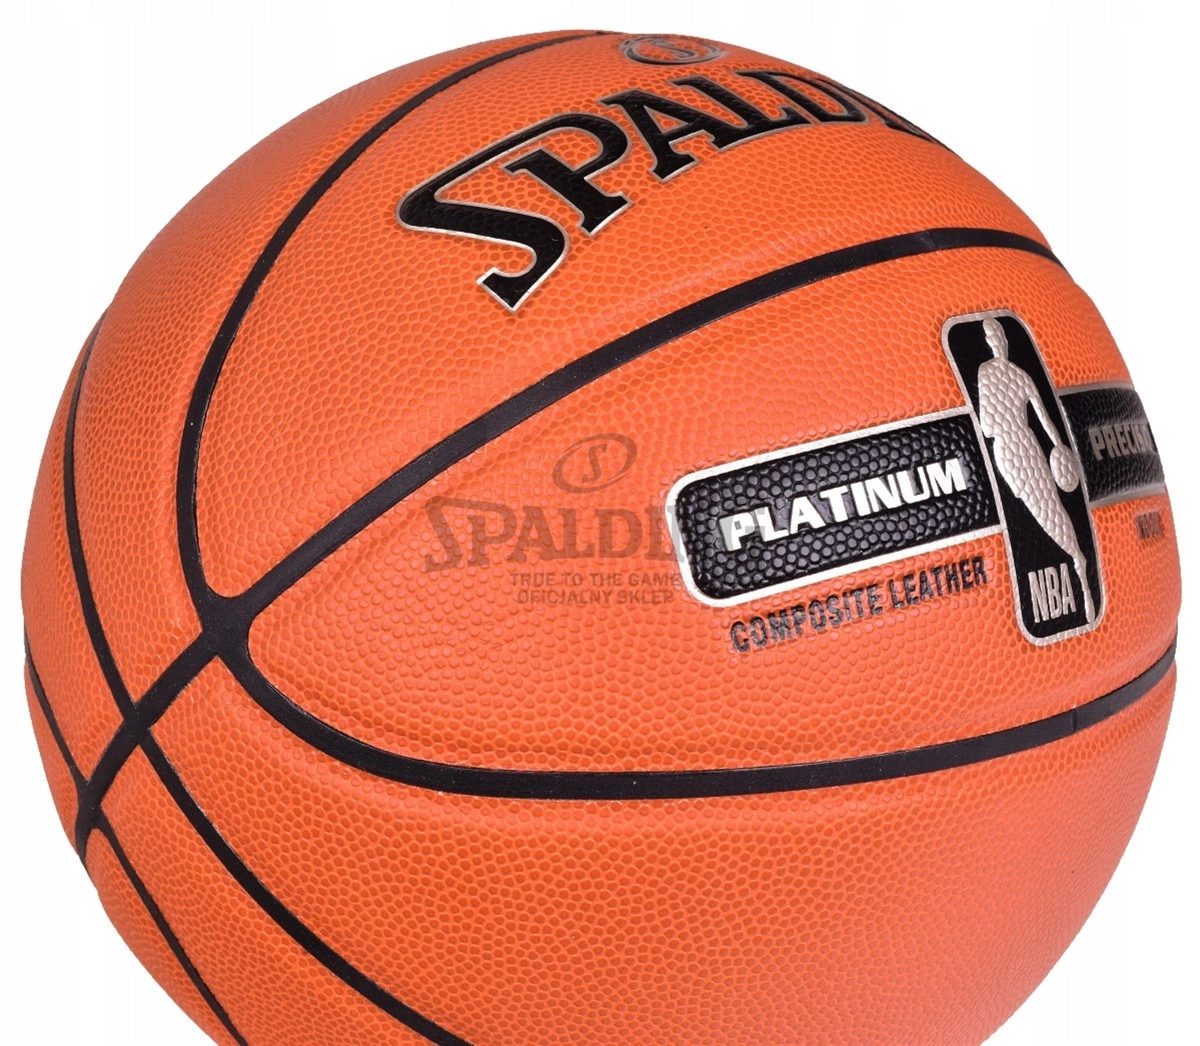 7 - dla dziecięce, w Kup dzieci, precision - foteliki zabawki Neonn NBA SPALDING koszykówki Platinum wózki samochodowe piłka